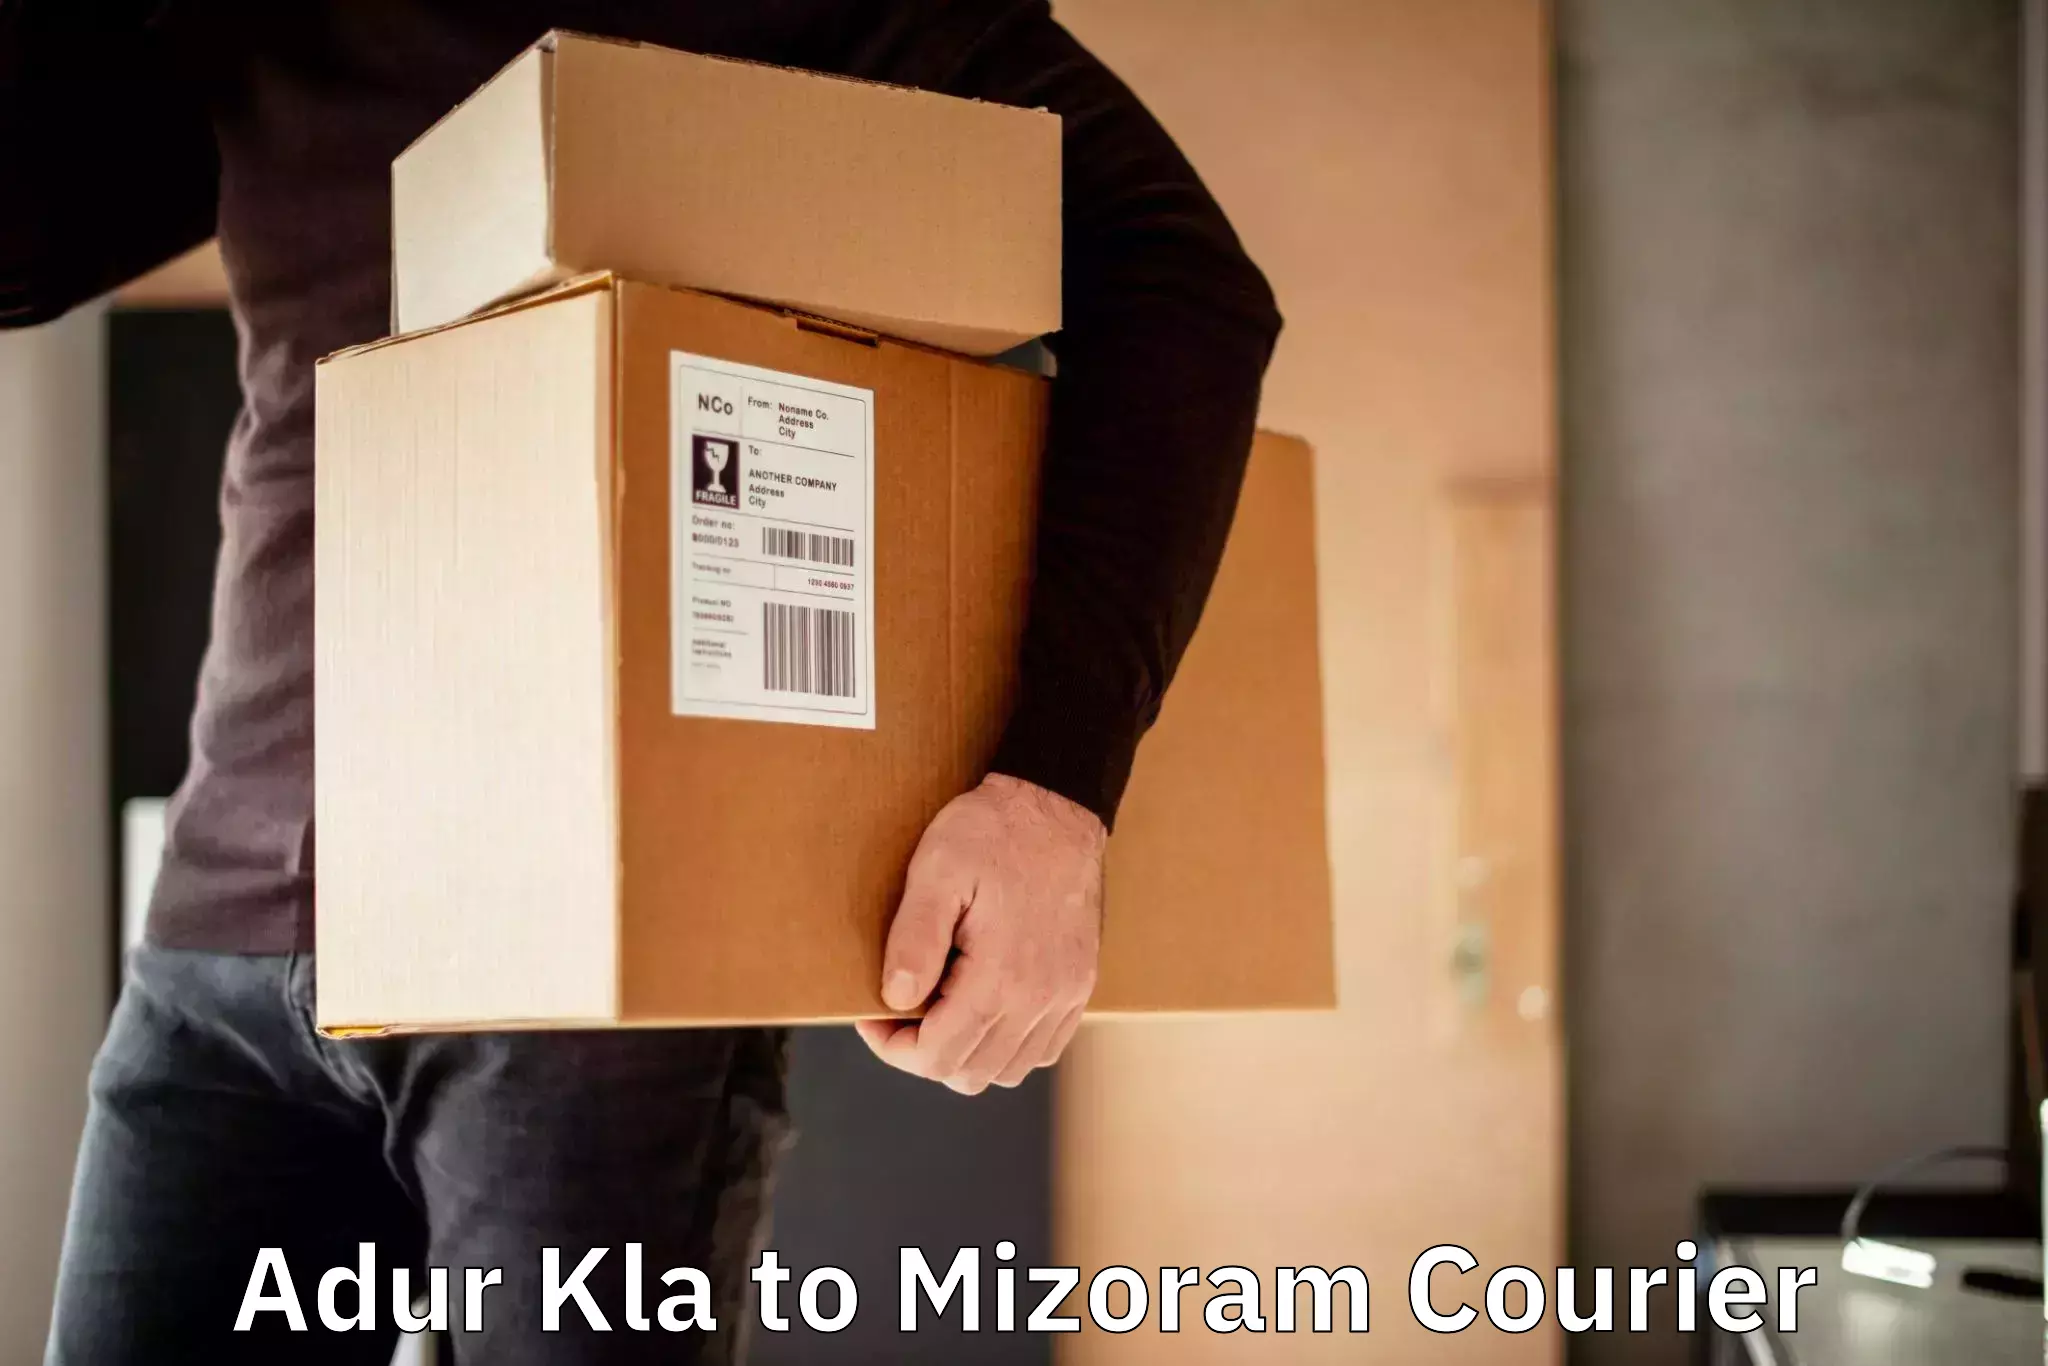 Cargo delivery service Adur Kla to Mizoram